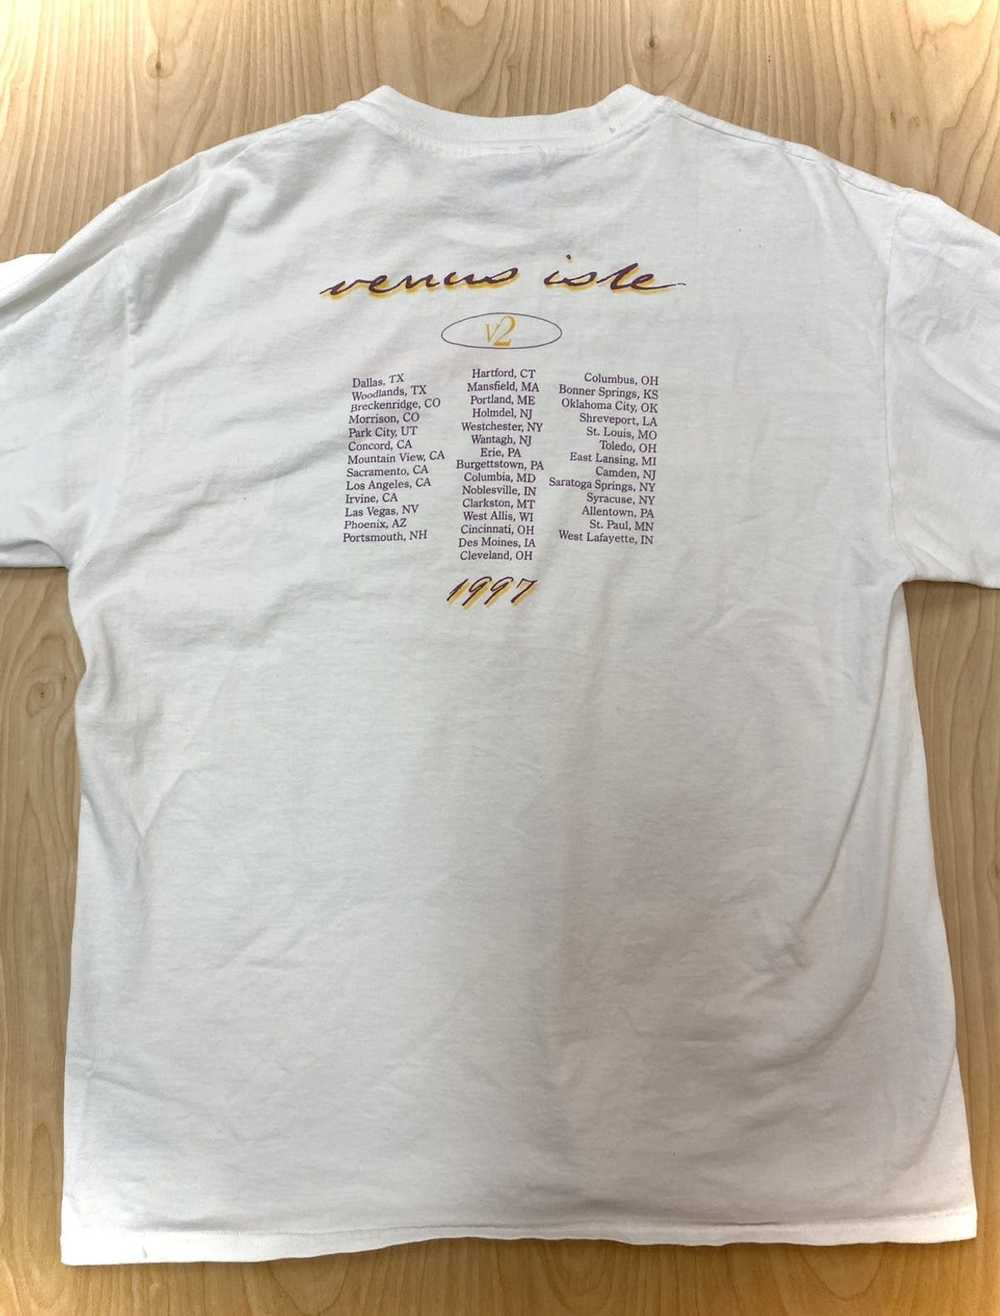 Band Tees × Vintage 1997 Eric John Tour Shirt - image 2